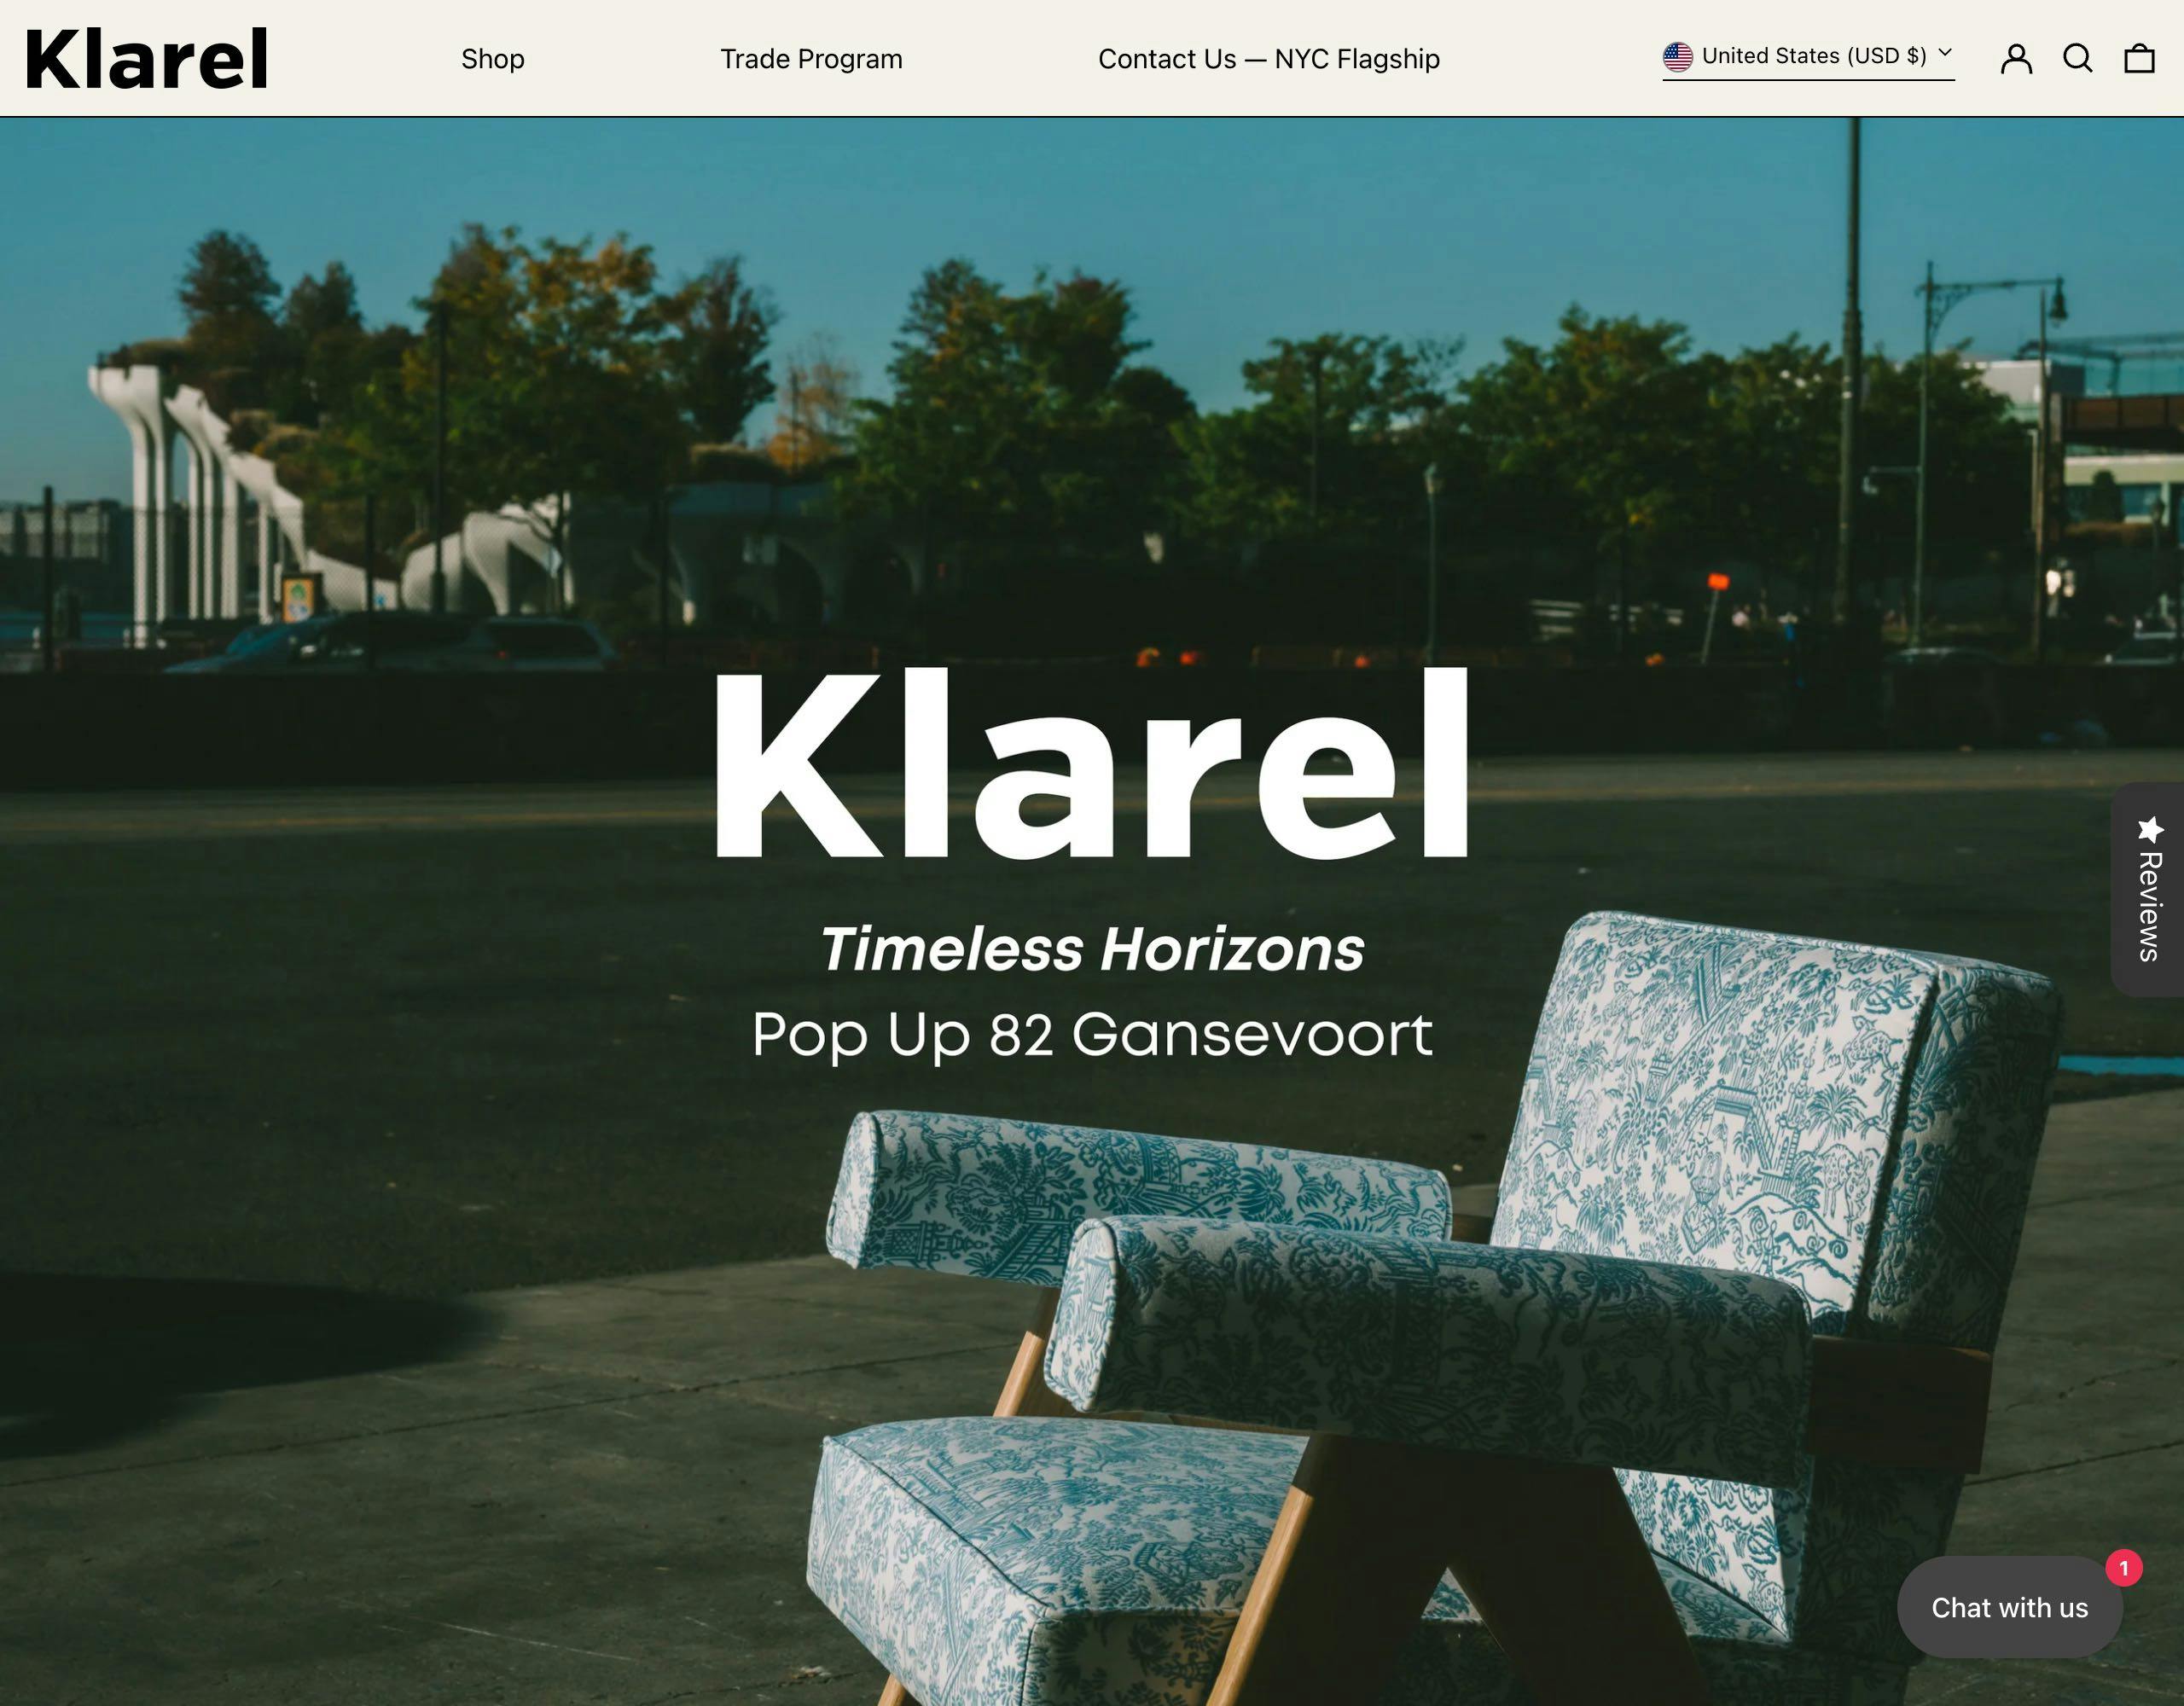 Klarel website